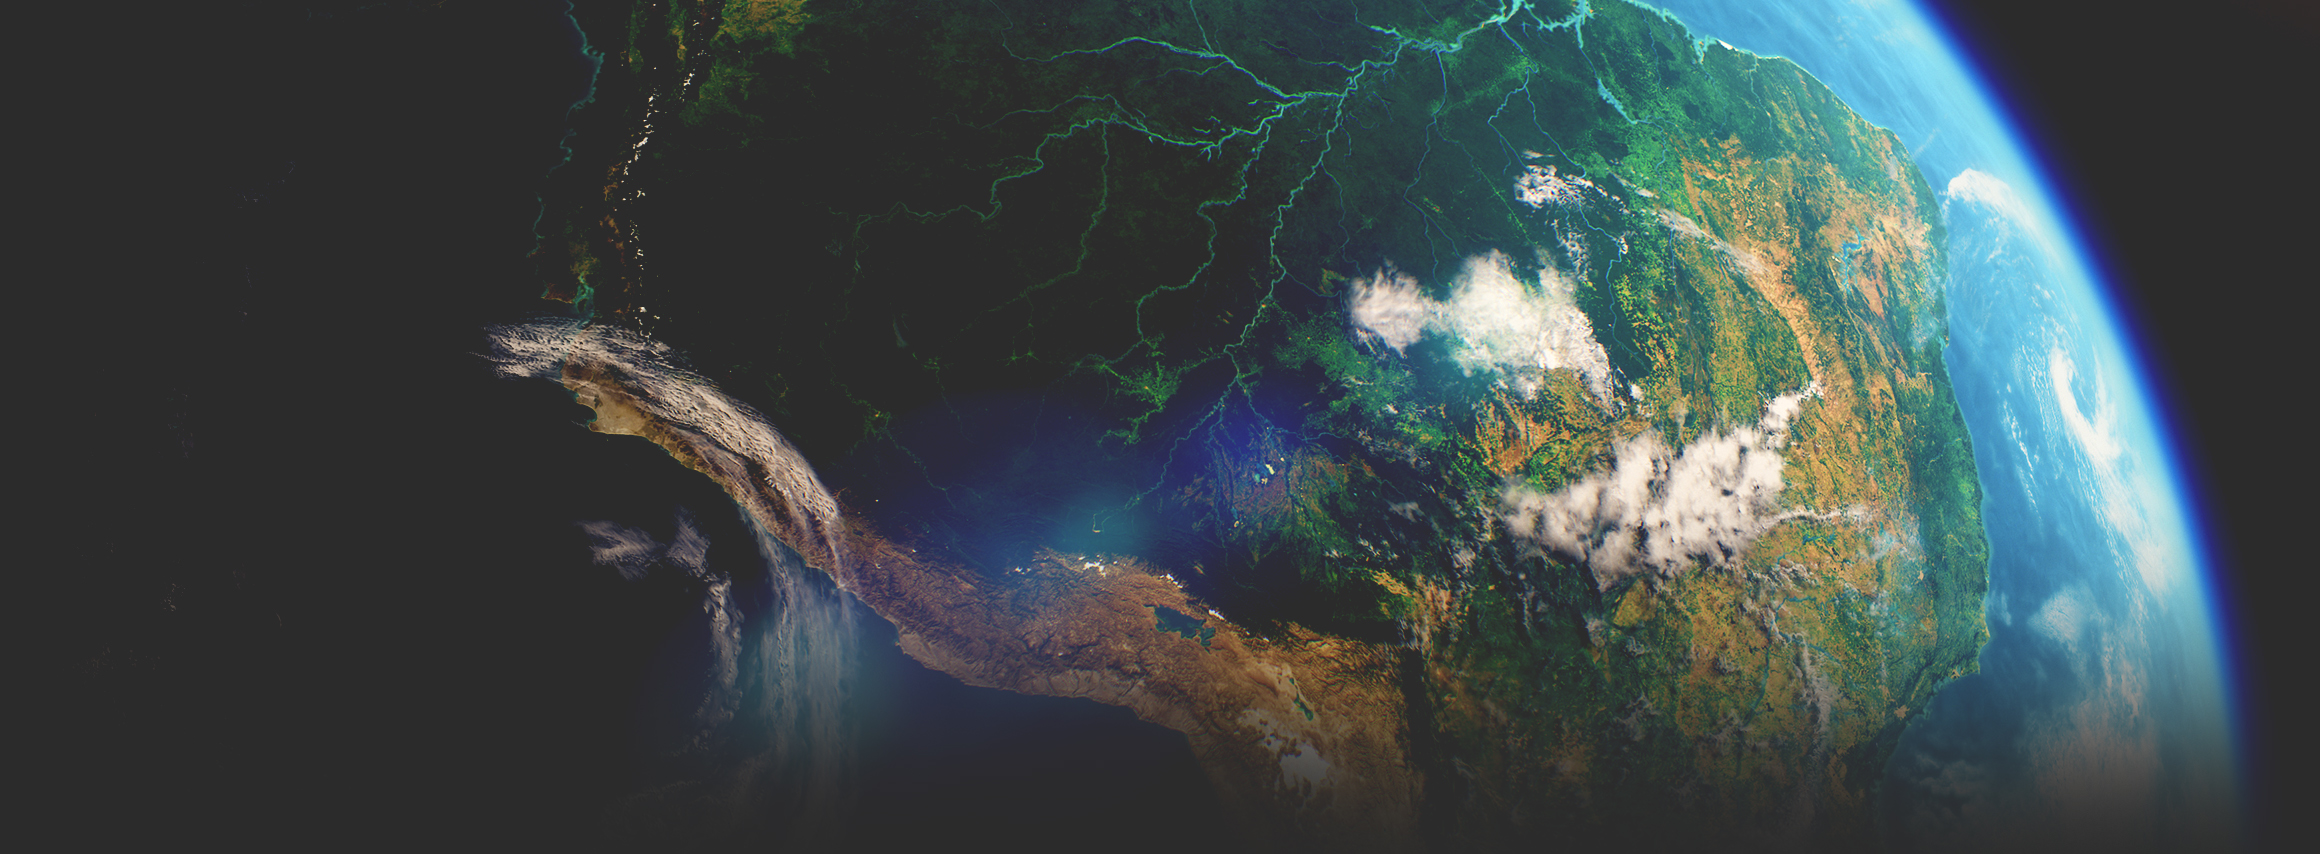 从太空拍摄的卫星影像显示了一片绿色大陆，以及横穿大陆的河流、海洋和大气